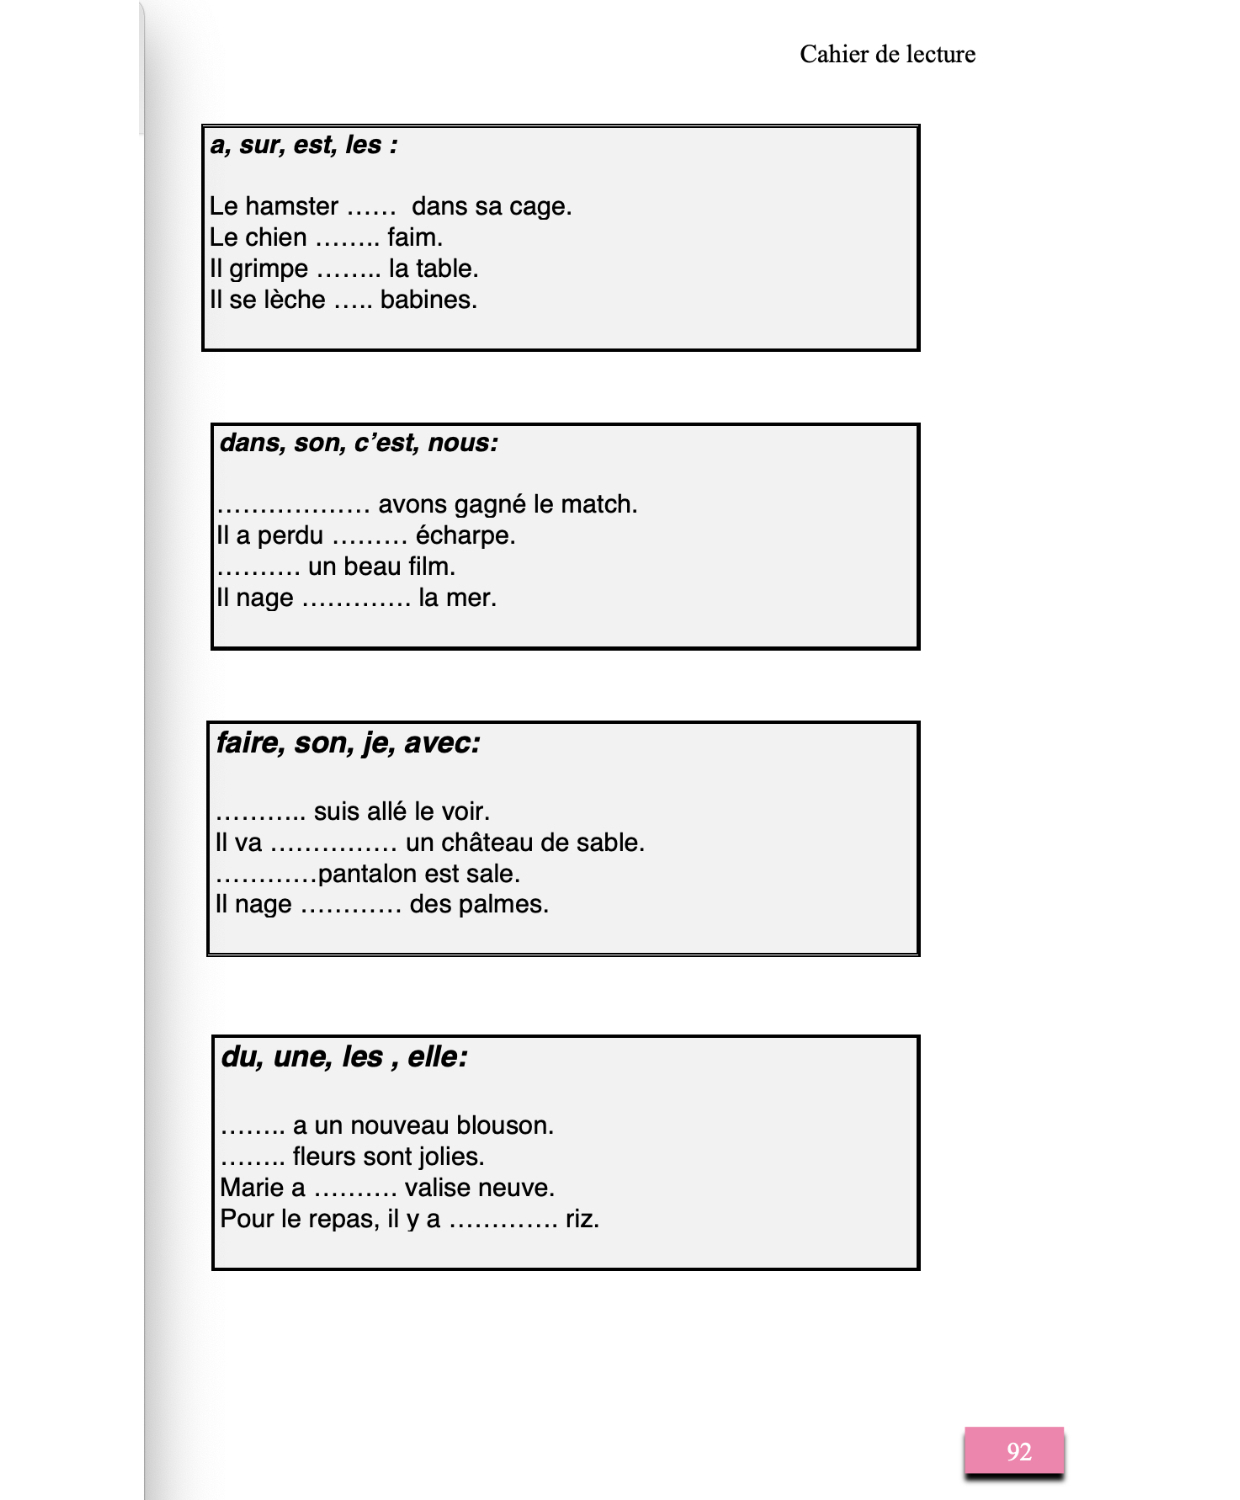 Méthode simplifiée en 3 volumes d'Elisabeth Ney - Extrait du volume 1 (page 92) : Cahier d'exercices de lecture pour l'apprentissage et le renforcement du français, à l'usage des personnes allophones et francophones